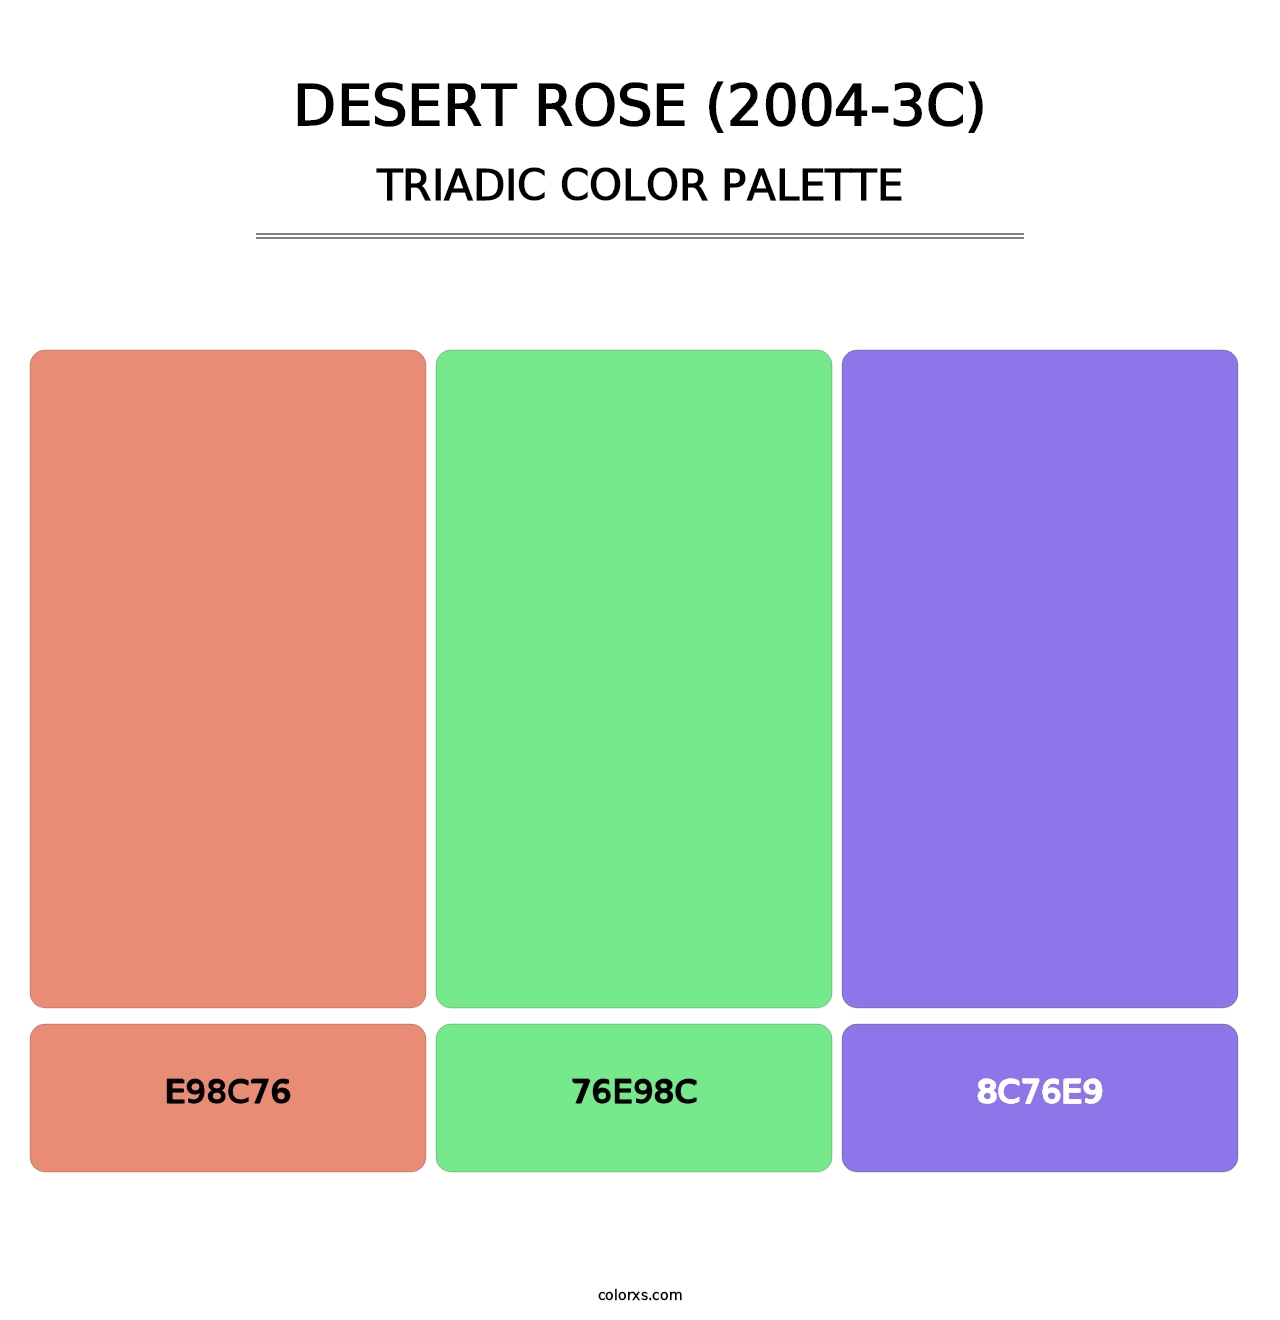 Desert Rose (2004-3C) - Triadic Color Palette